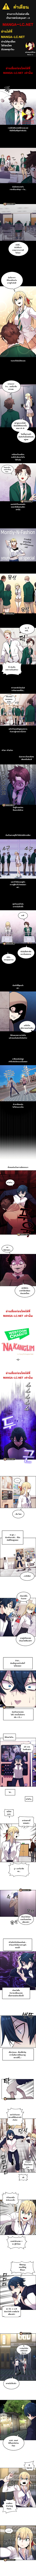 Webtoon Character Na Kang Lim ตอนที่ 6 (1)